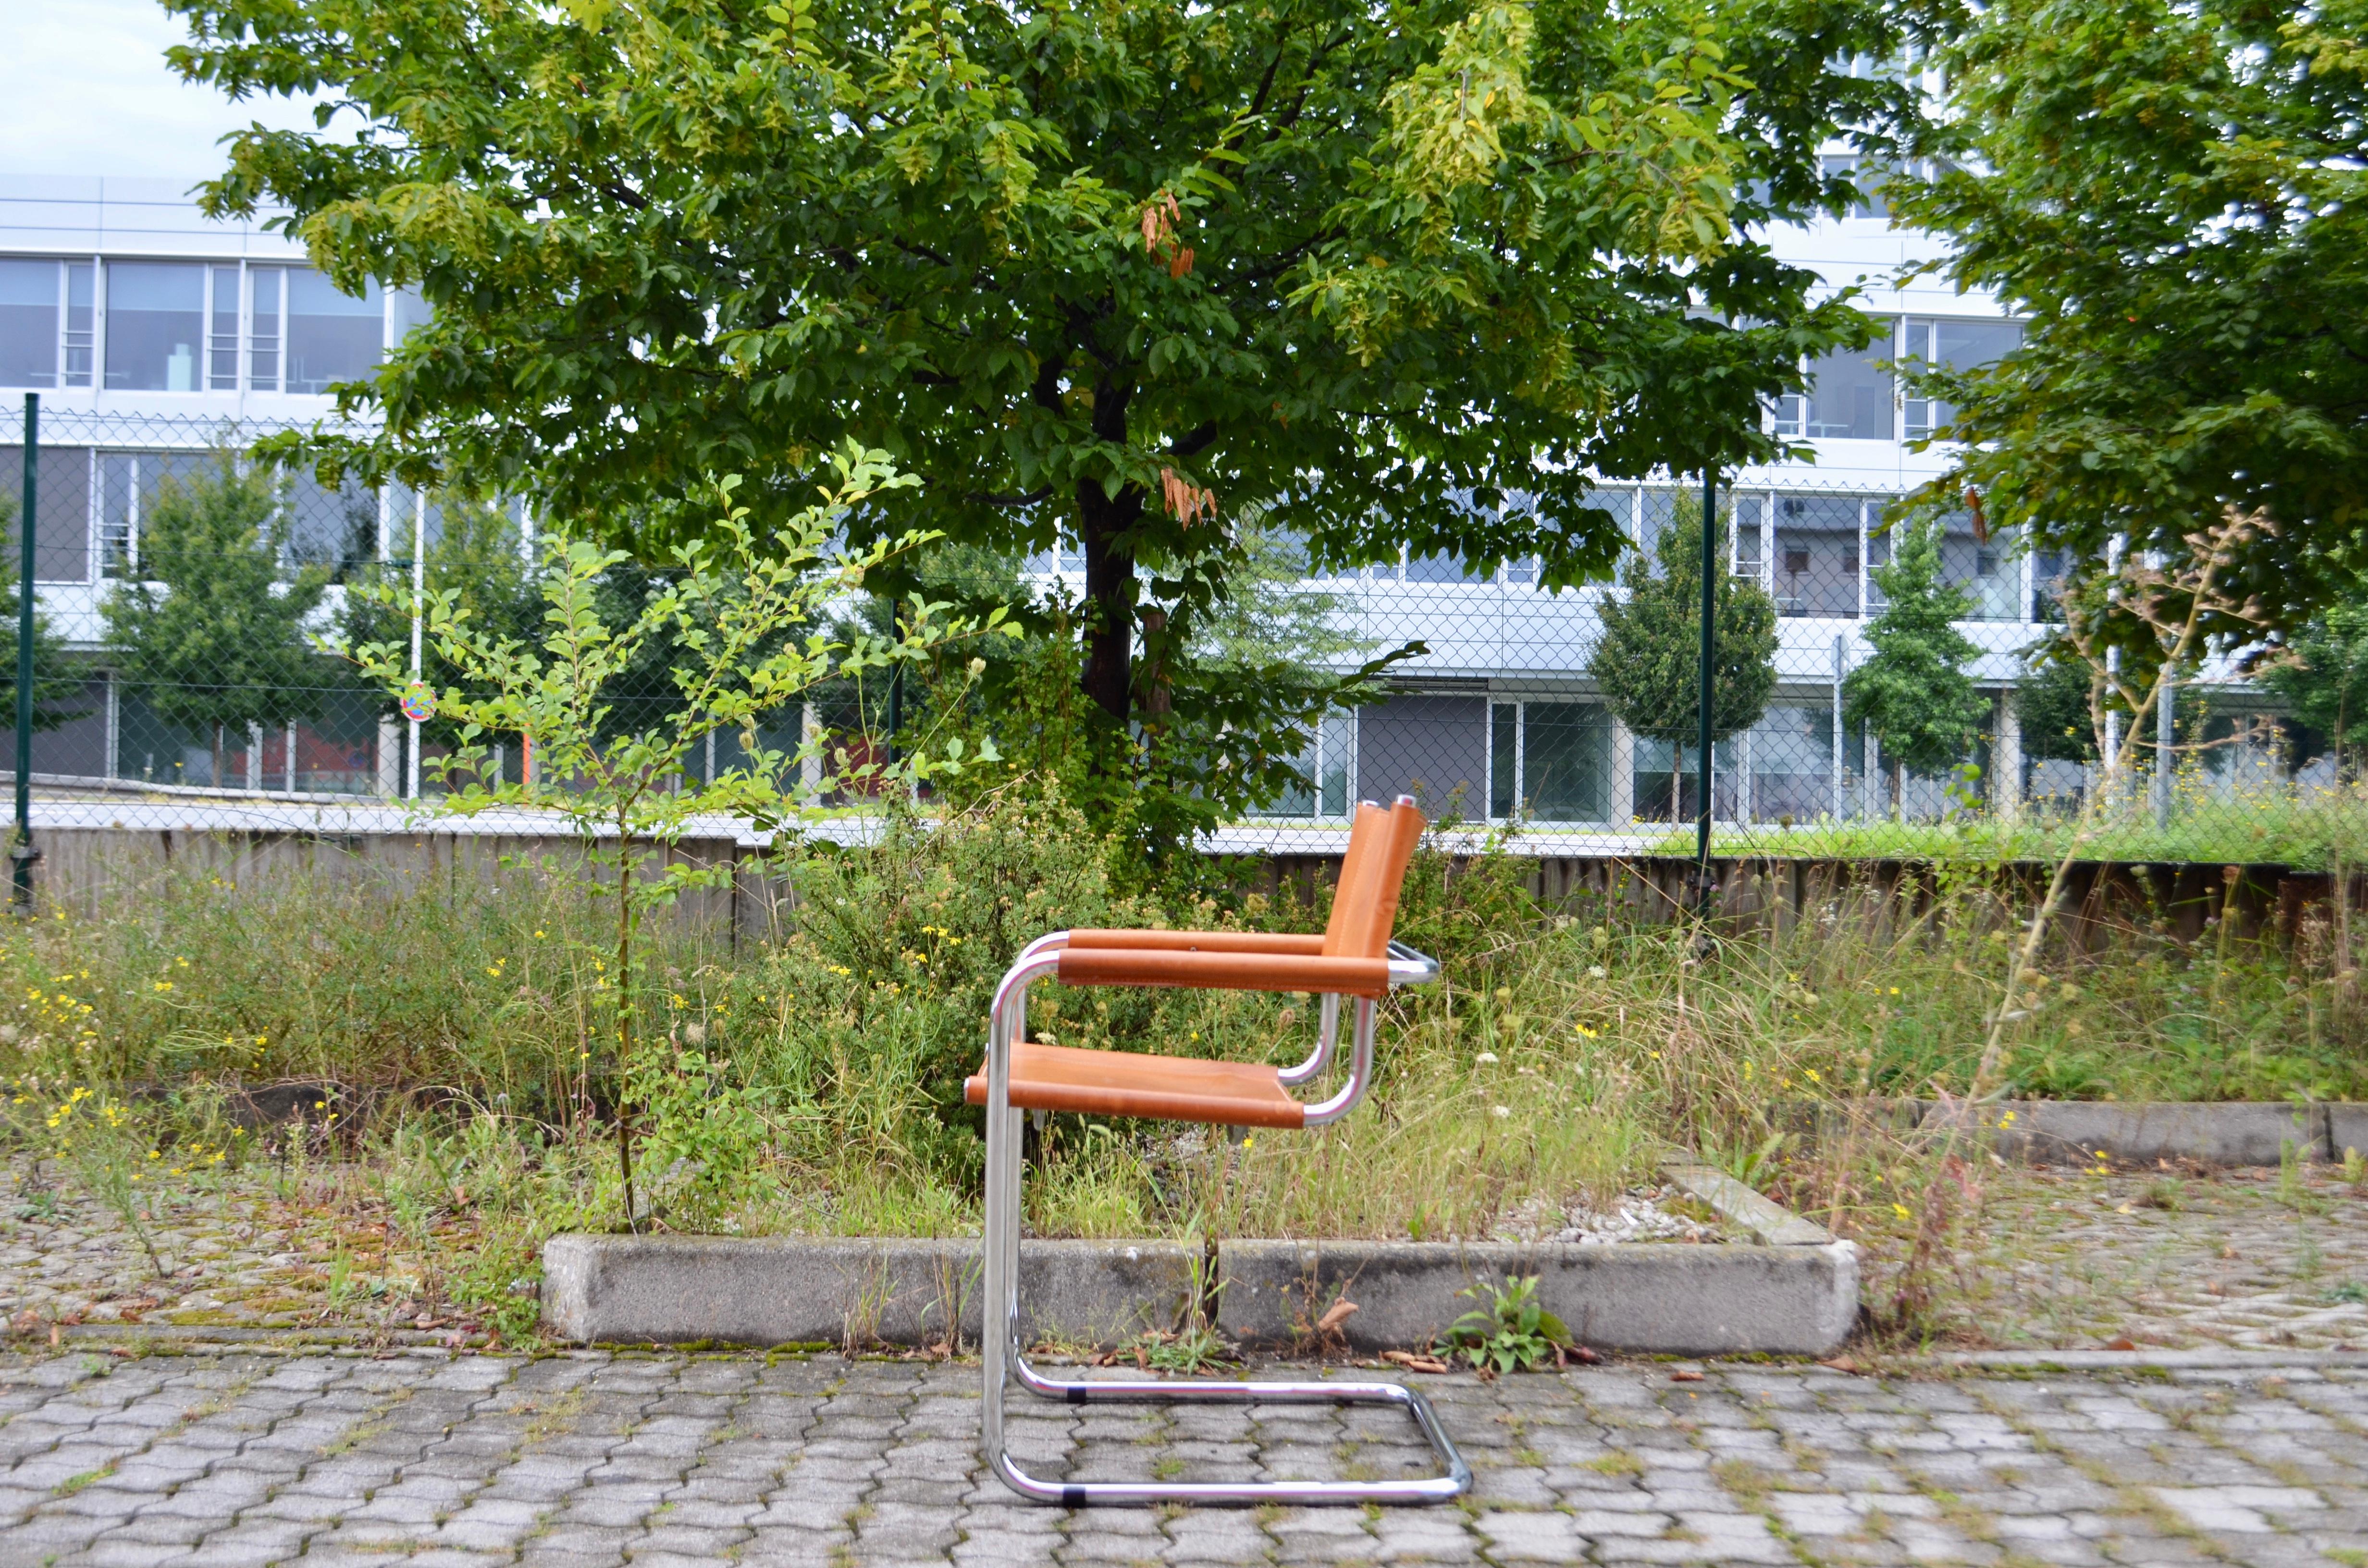 Cette chaise cantilever vintage est un classique italien.
À la manière de Marcel Breuer, ces chaises sont fortement inspirées du mouvement Bauhaus.
C'est le cuir épais de la selle, tanné végétal, qui a développé avec les années une magnifique